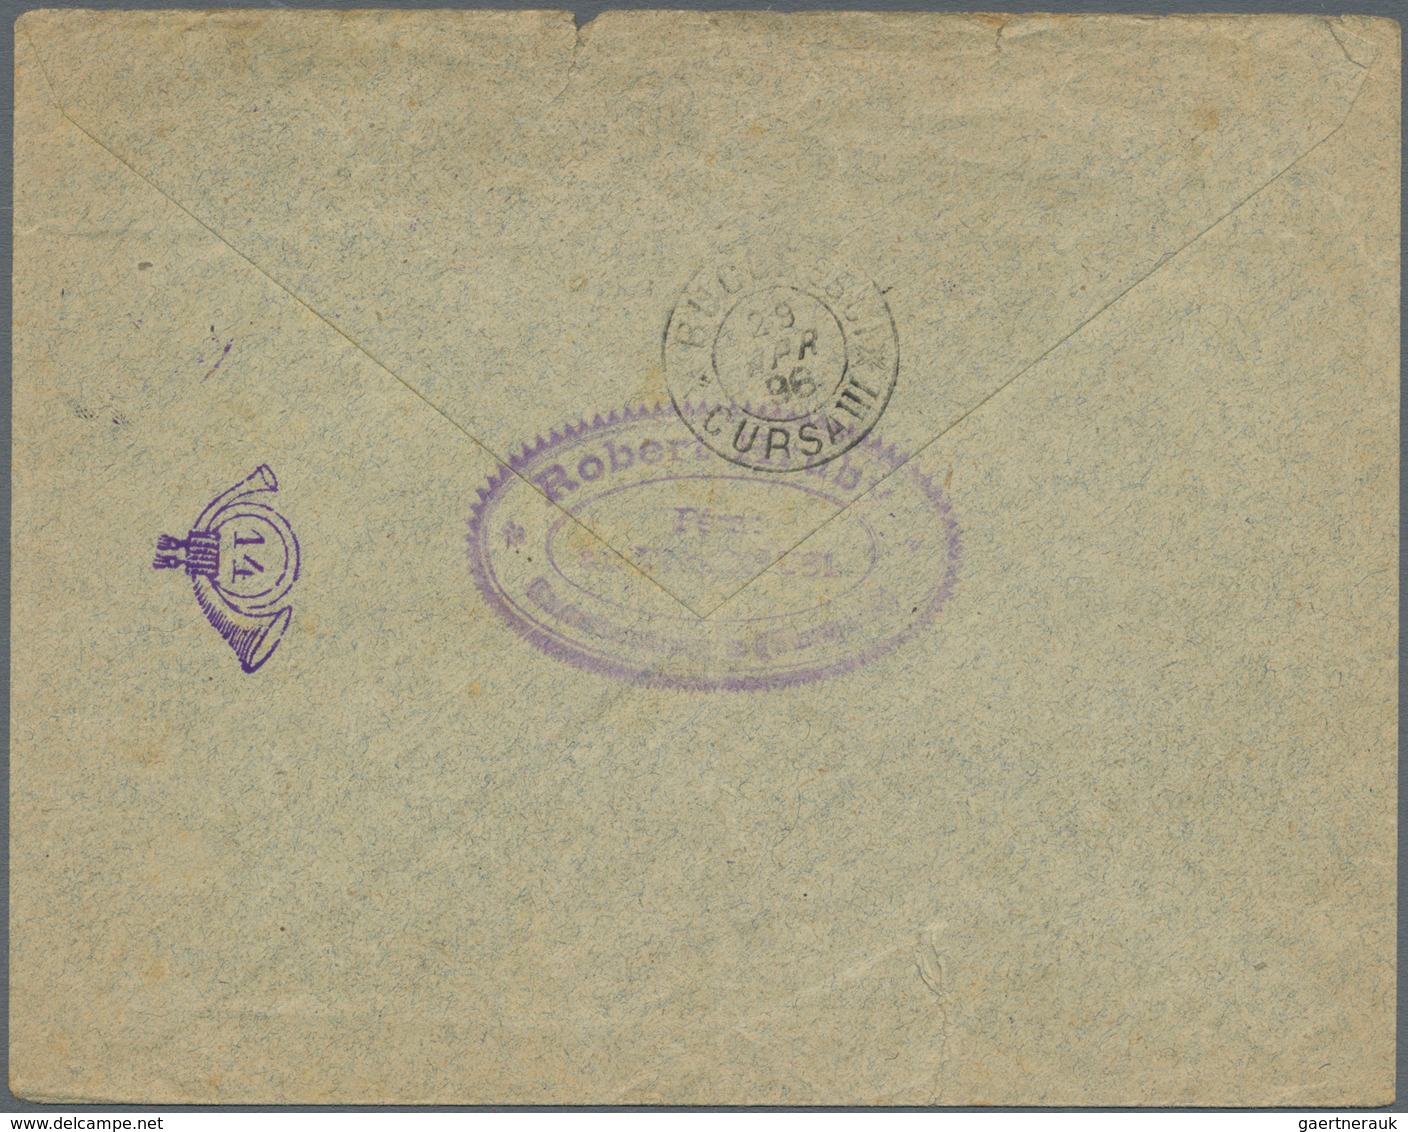 Rumänien - Rumänische Post In Der Levante: 1896 Printed Envelope Sent From The Rumanian P.O. In Cons - Levant (Turquie)